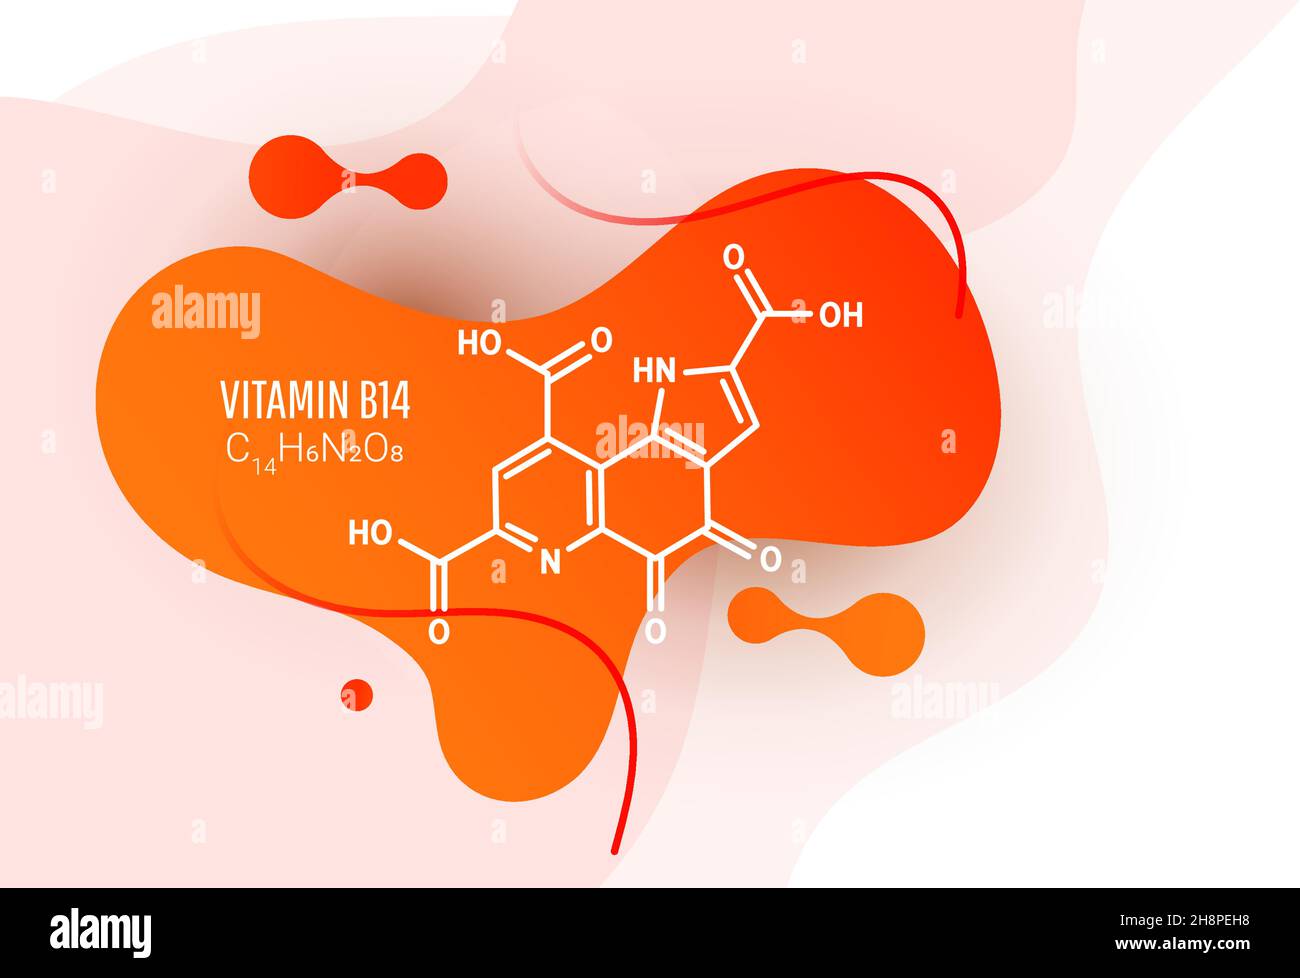 Vitamine B14 PQQ , méthoxatine C14H6N2O8 formule moléculaire avec formes liquides sur fond blanc, illustration vectorielle Illustration de Vecteur